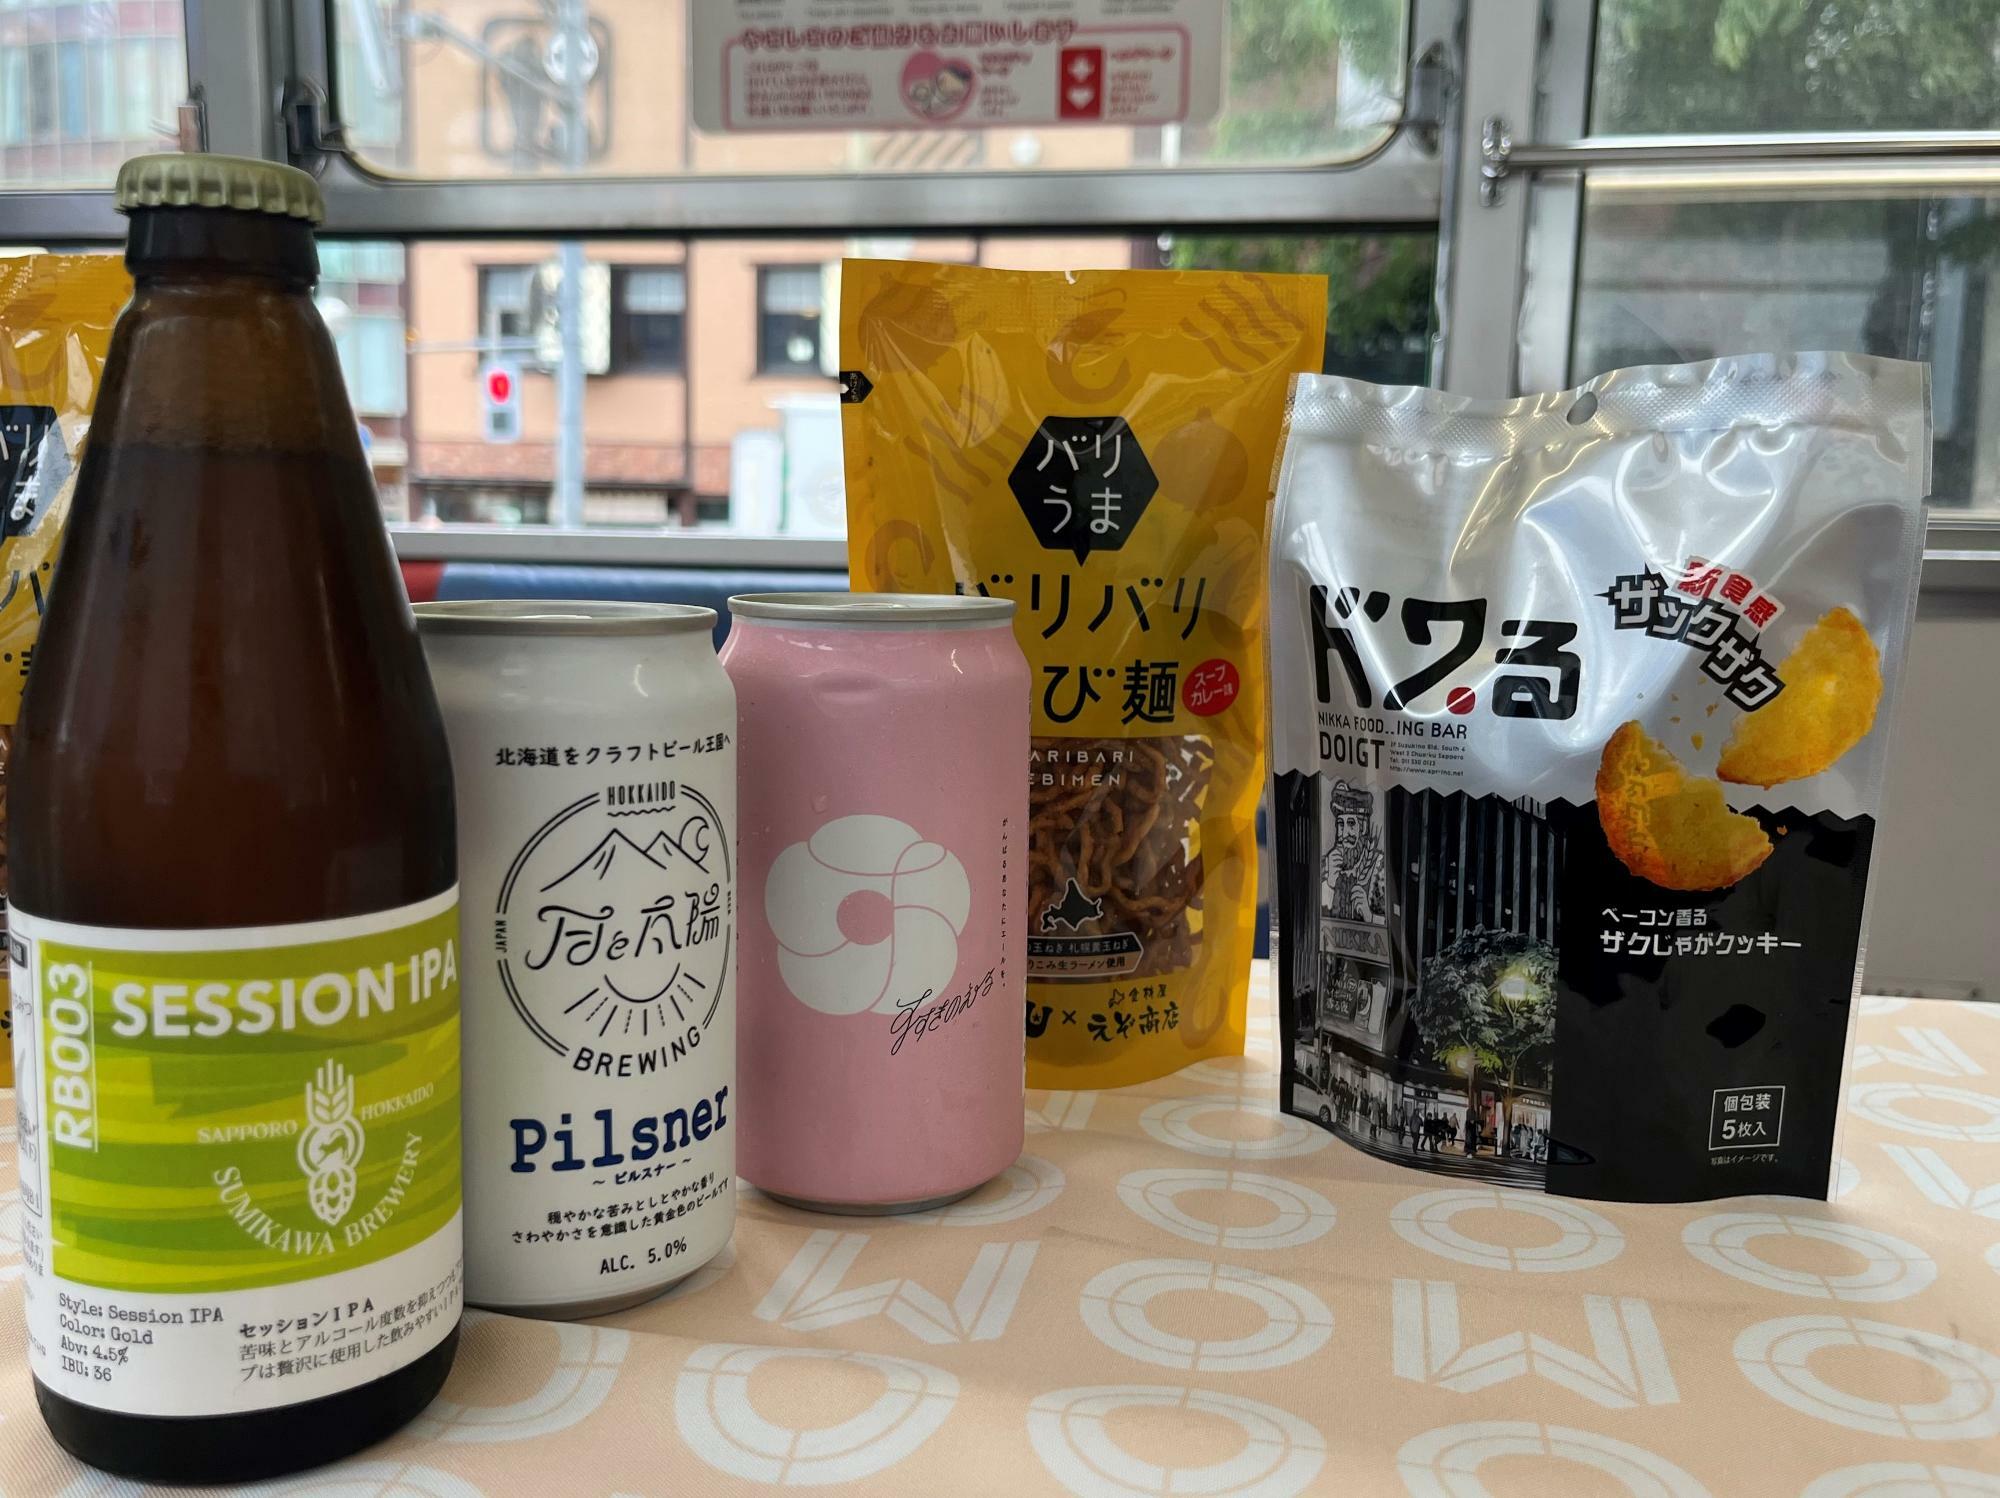 左から澄川麦酒の「セッションIPA」、月と太陽BREWINGの「ピルスナー」、すすきのブリューイングの「すすきのえーる」、「バリバリえび麺（スープカレー味）」、ジャガイモを使った「ドワ・る」